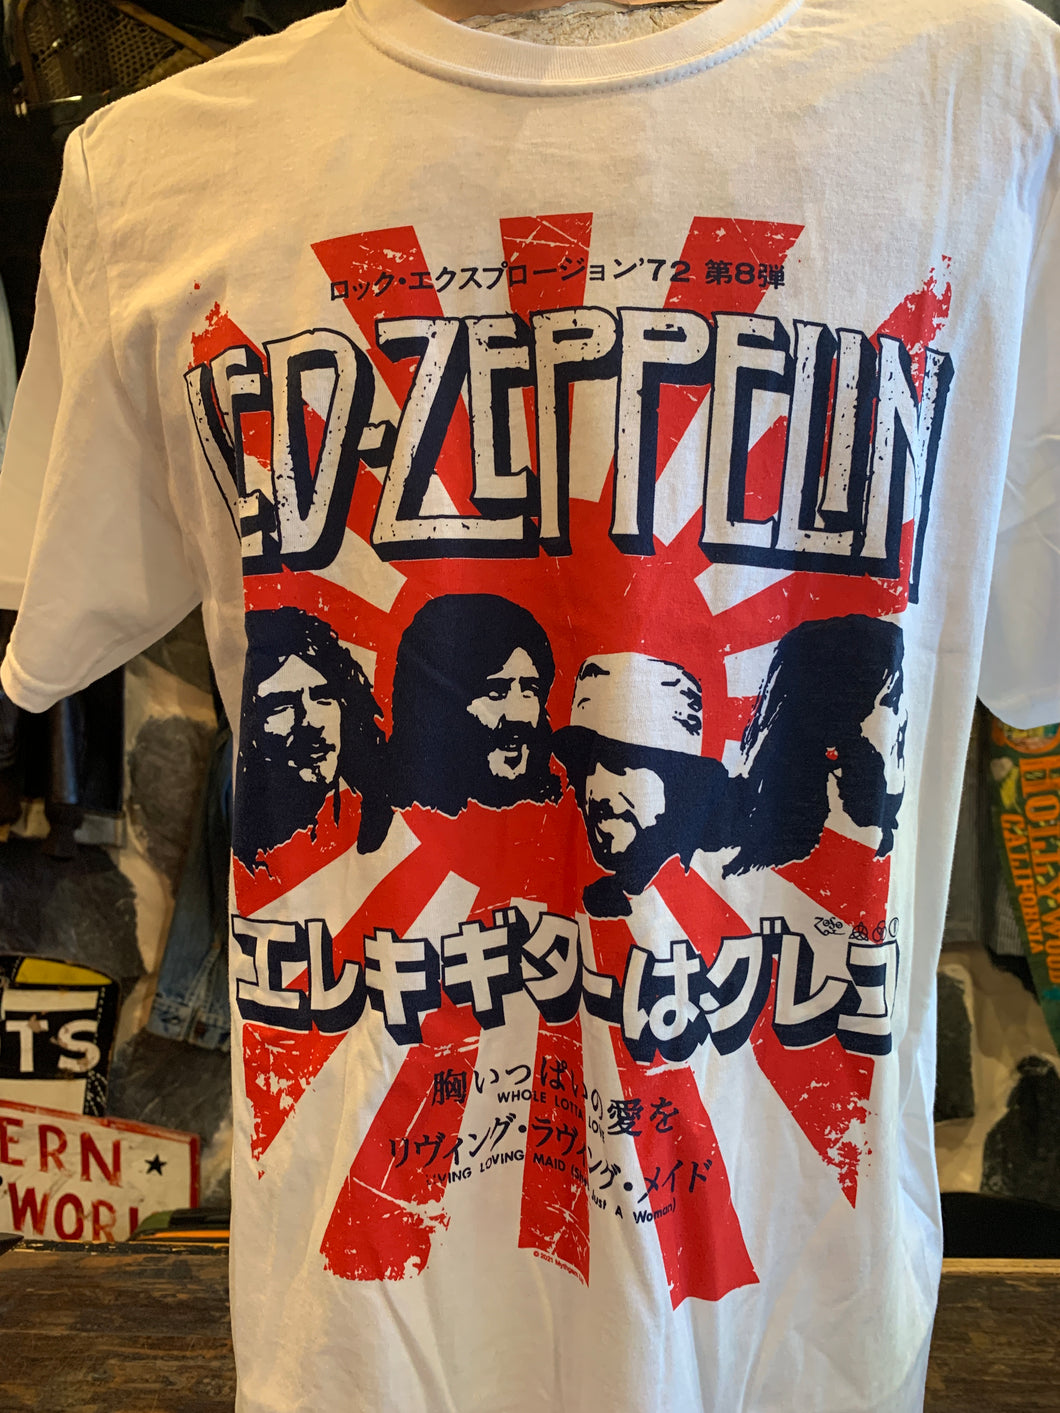 Led Zeppelin Rising Sun Japanese Tour Print